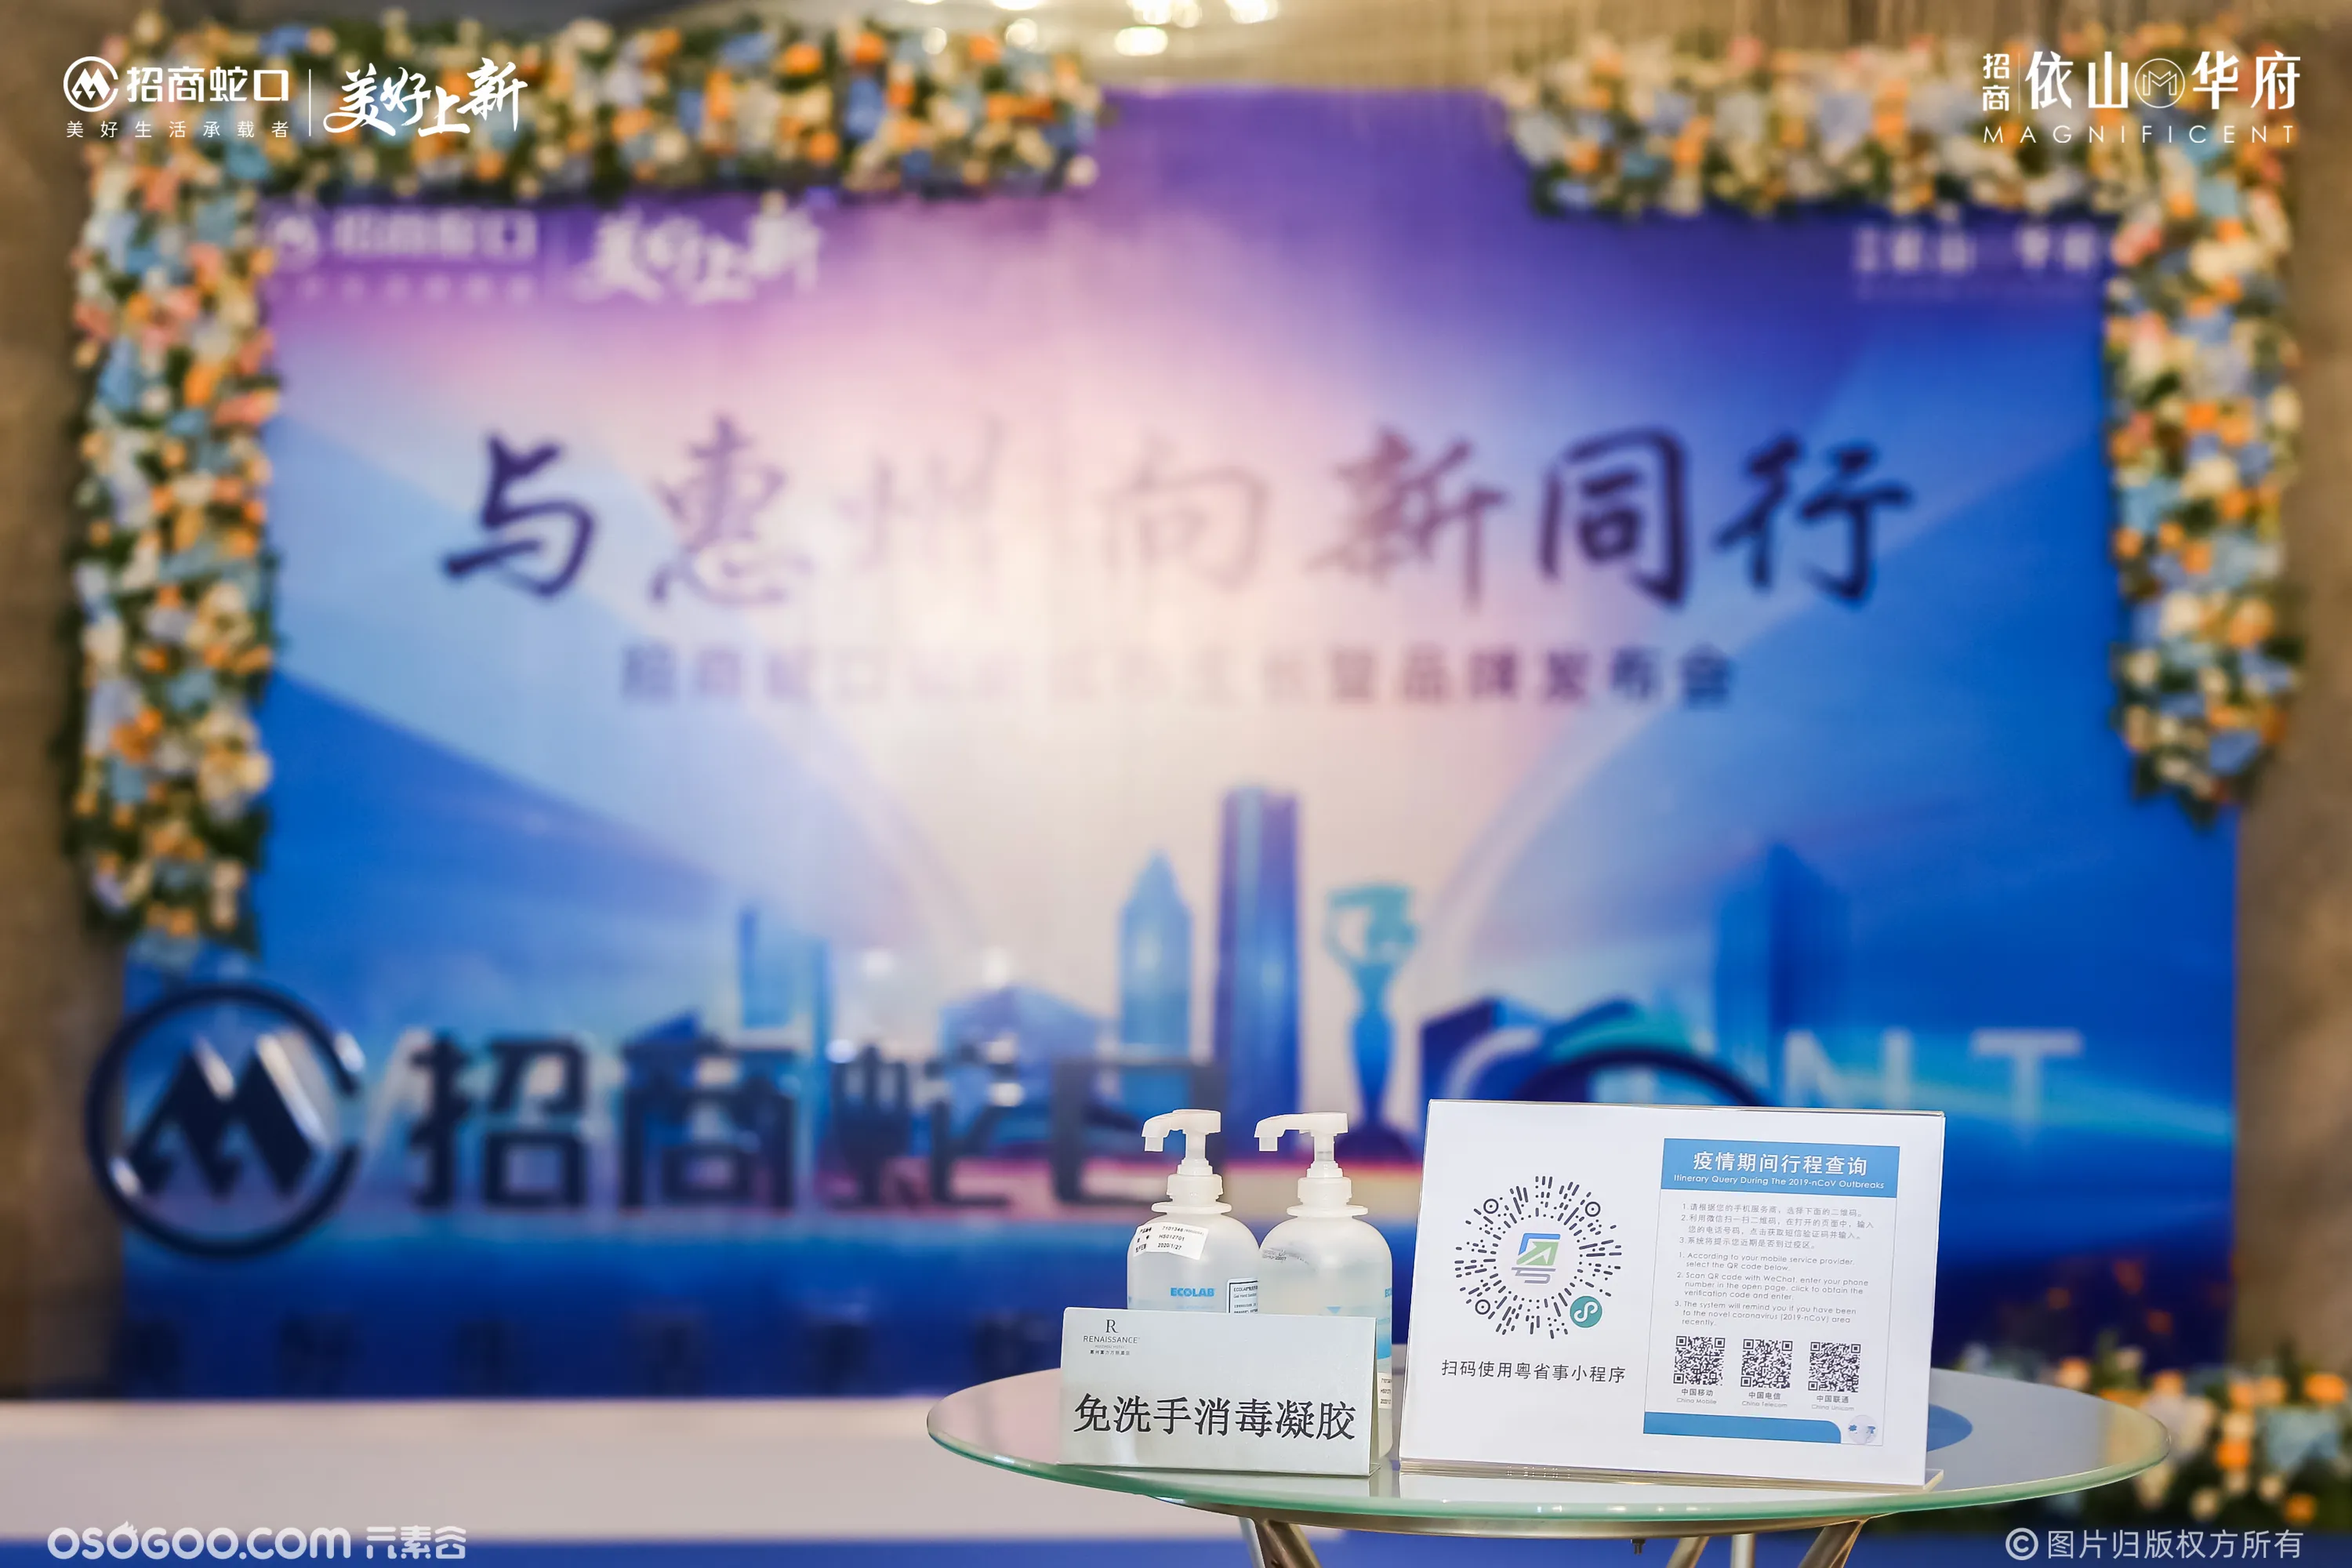 与惠州 向新同行-招商蛇口赋能城市生长暨品牌发布会